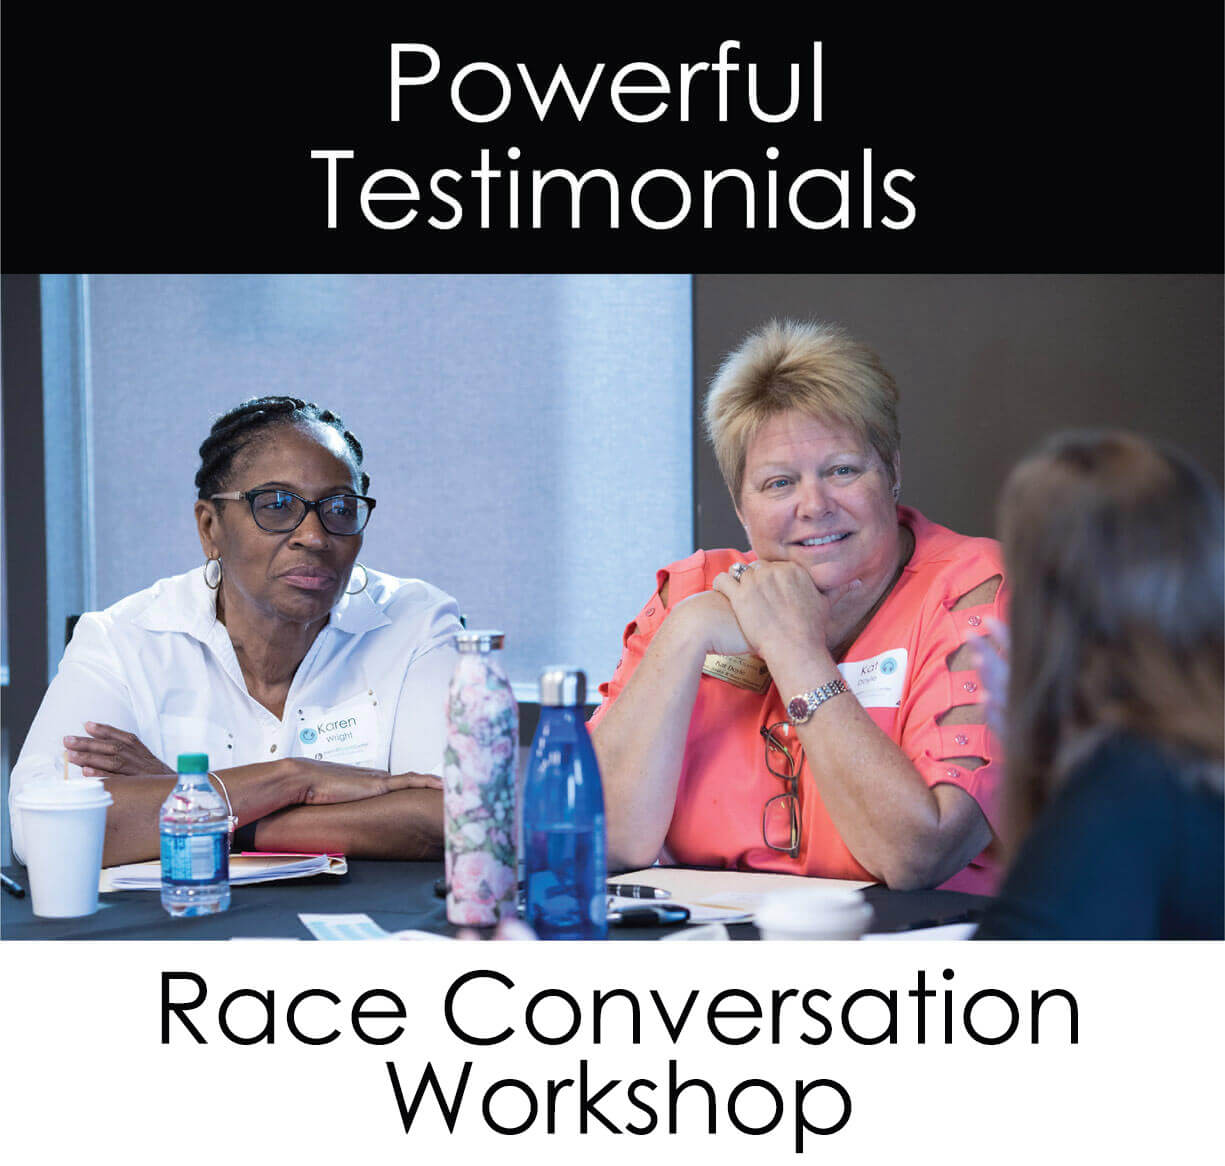 Race Conversation Workshop